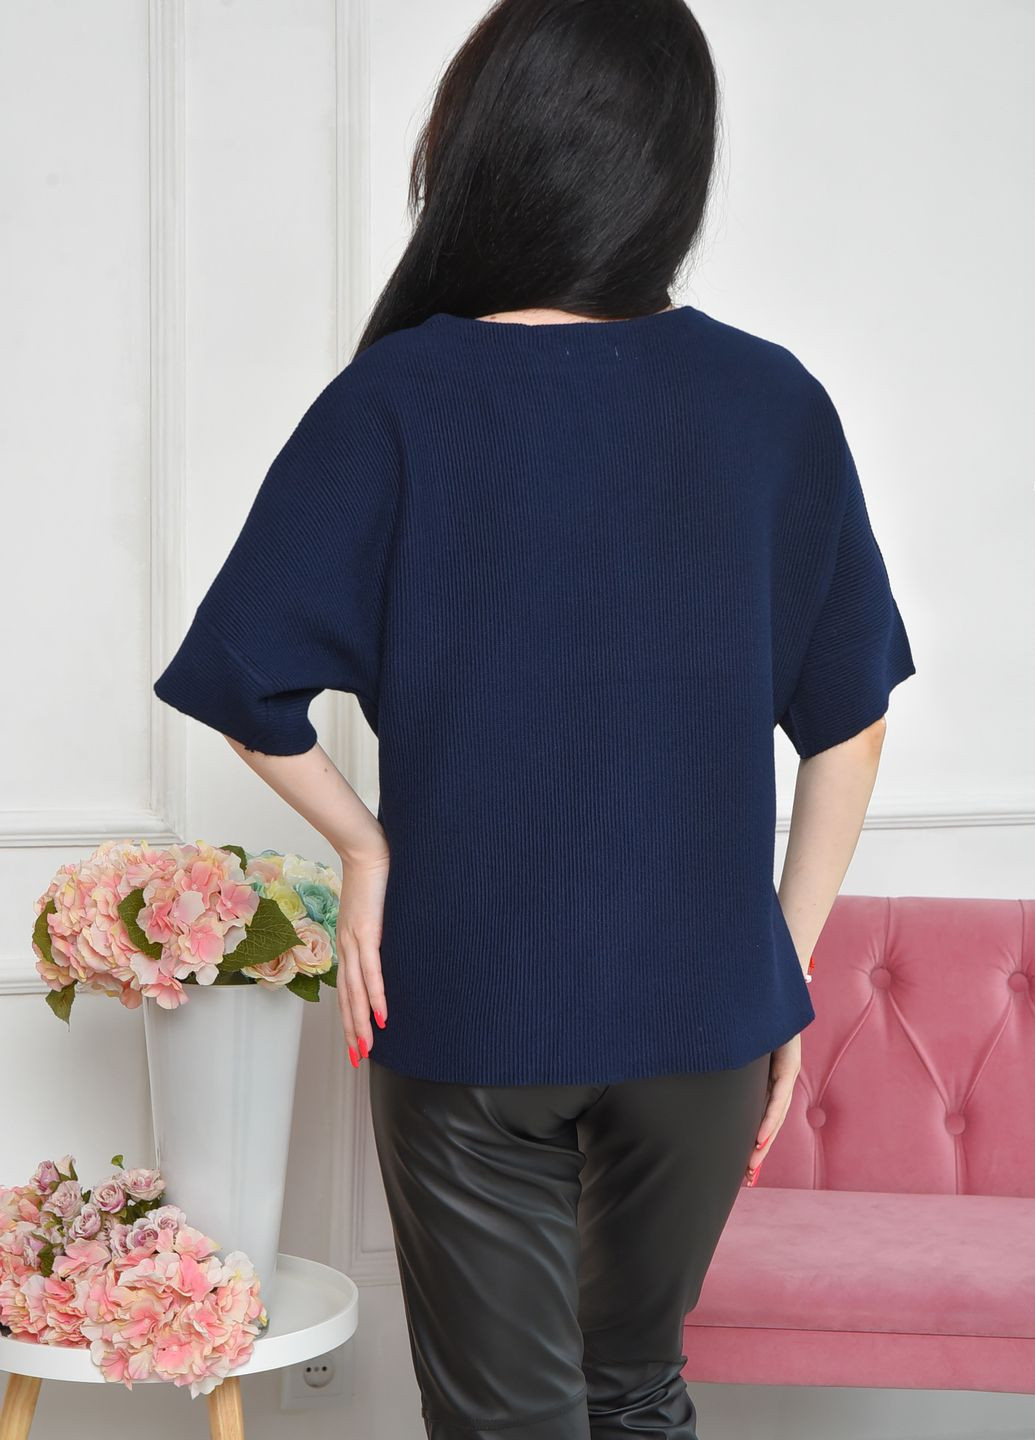 Темно-синий демисезонный свитер женский с коротким рукавом темно-синего цвета размер 46 пуловер Let's Shop